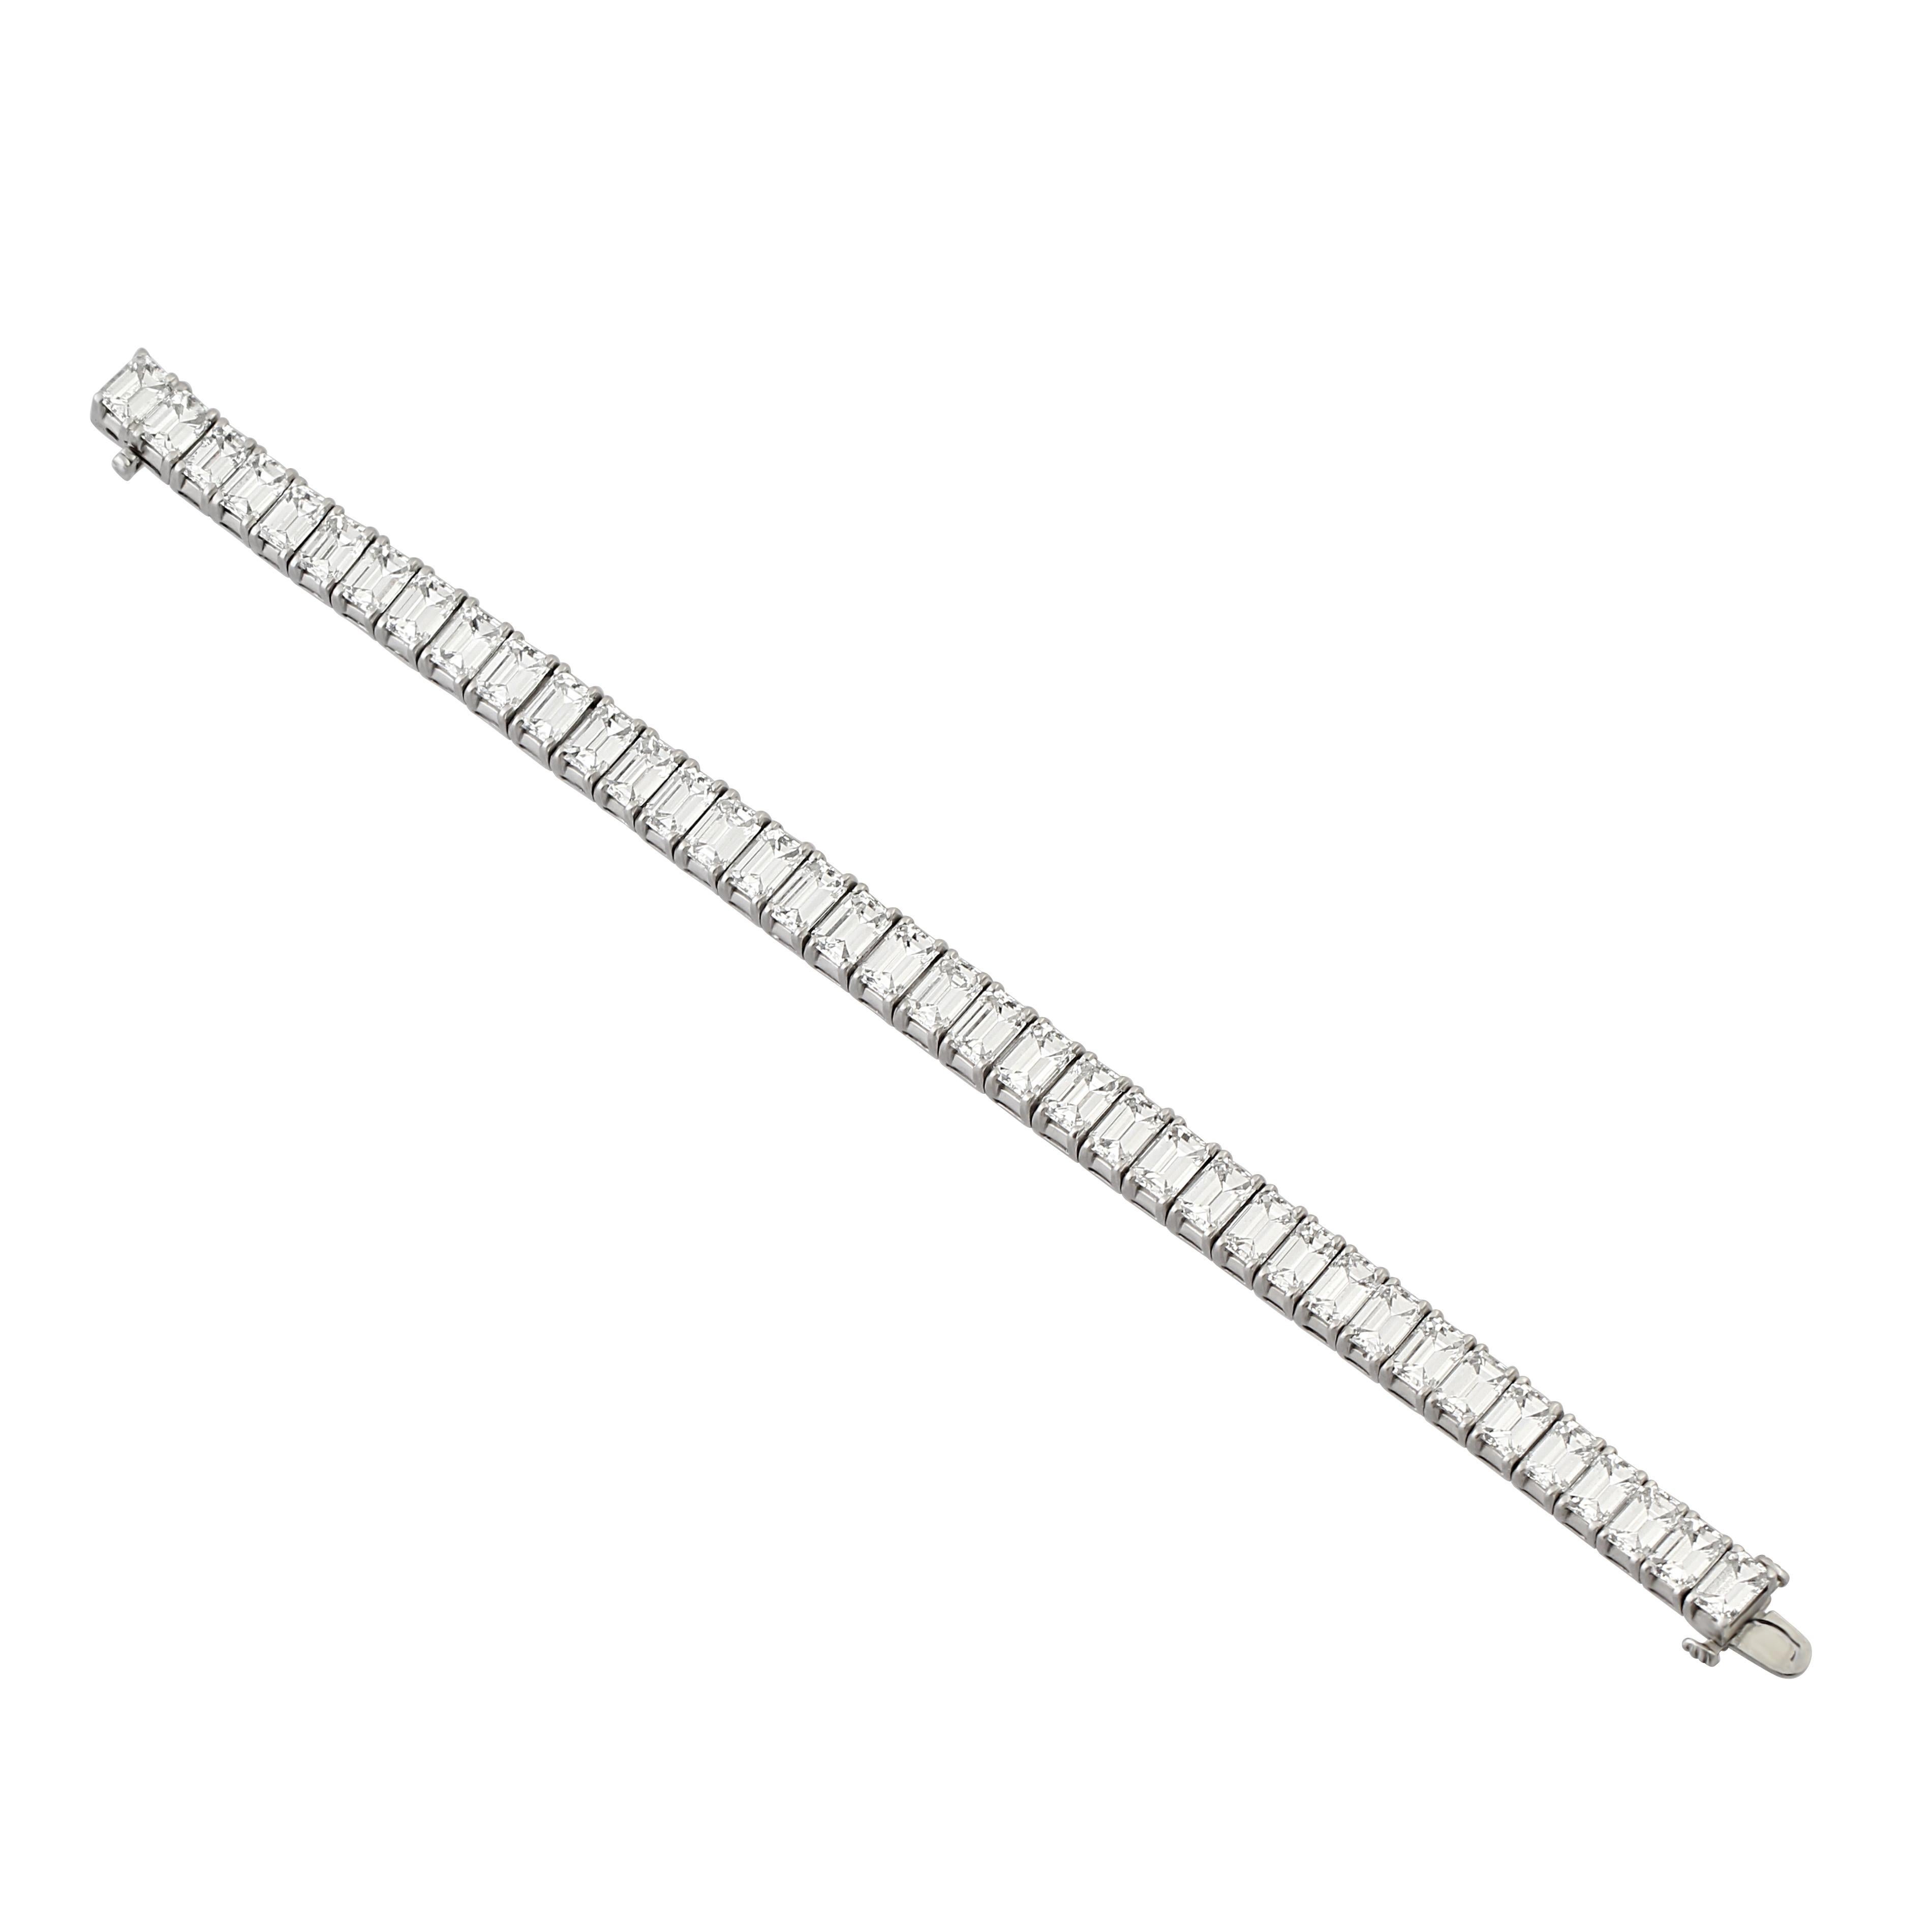 Ein Armband aus Platin und Diamanten, besetzt mit 38 Diamanten im Stufenschliff. Gesamtgewicht der Diamanten = 38,15 Karat.
